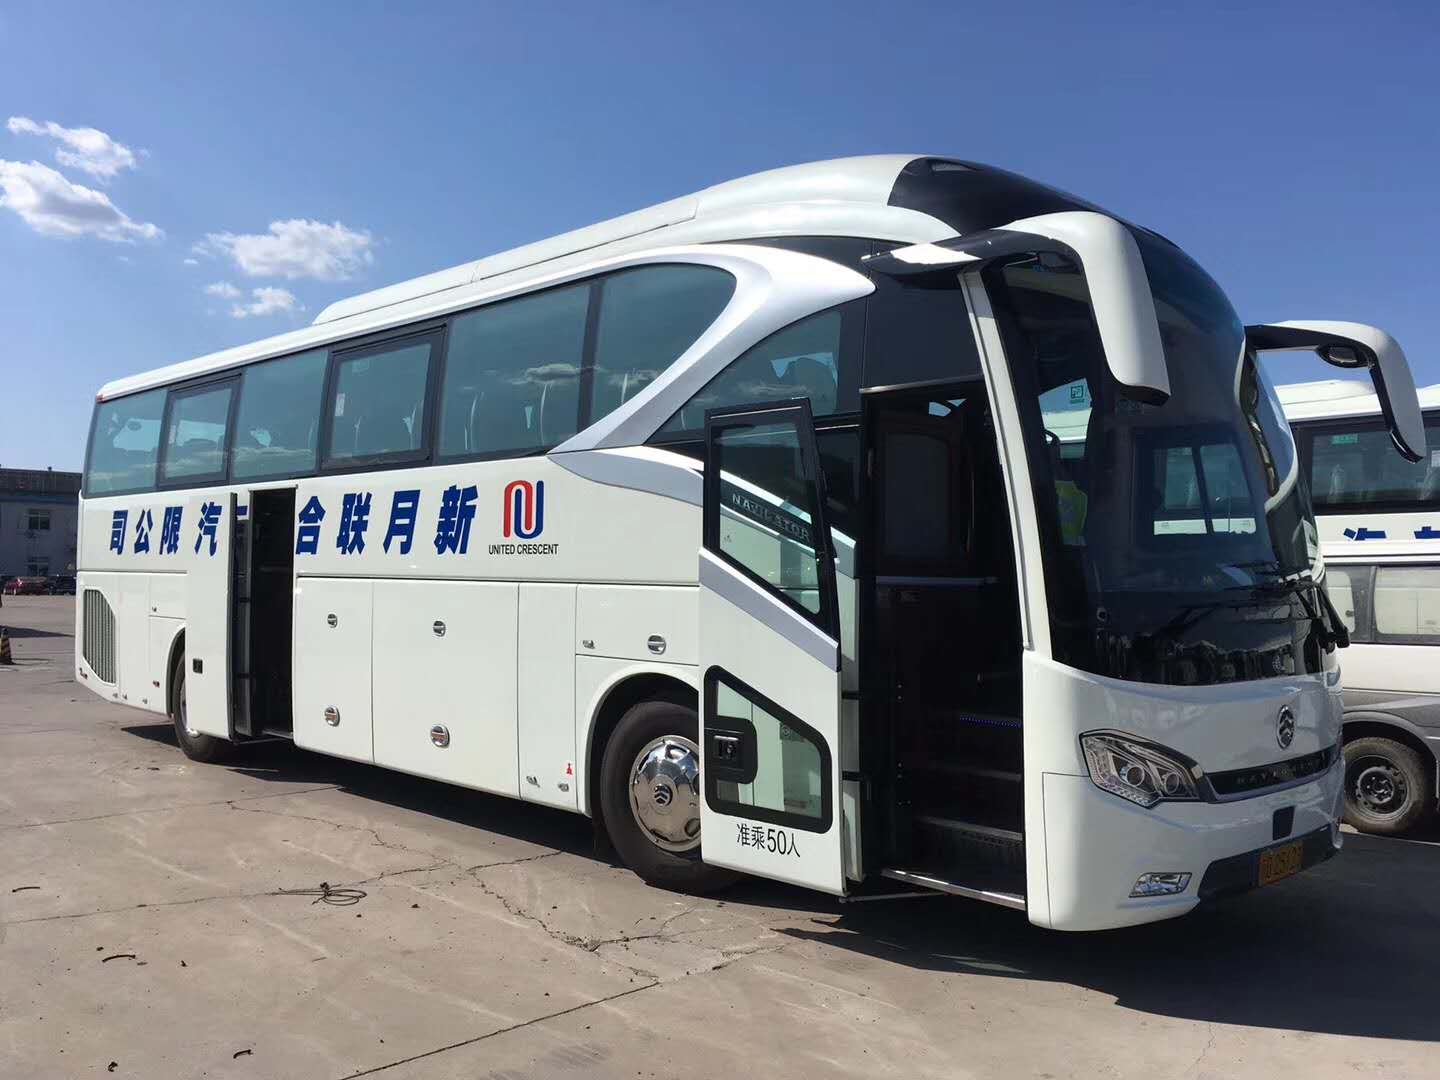 看巴士丨大型客车_中型客车_小型客车 – 400-622-2262